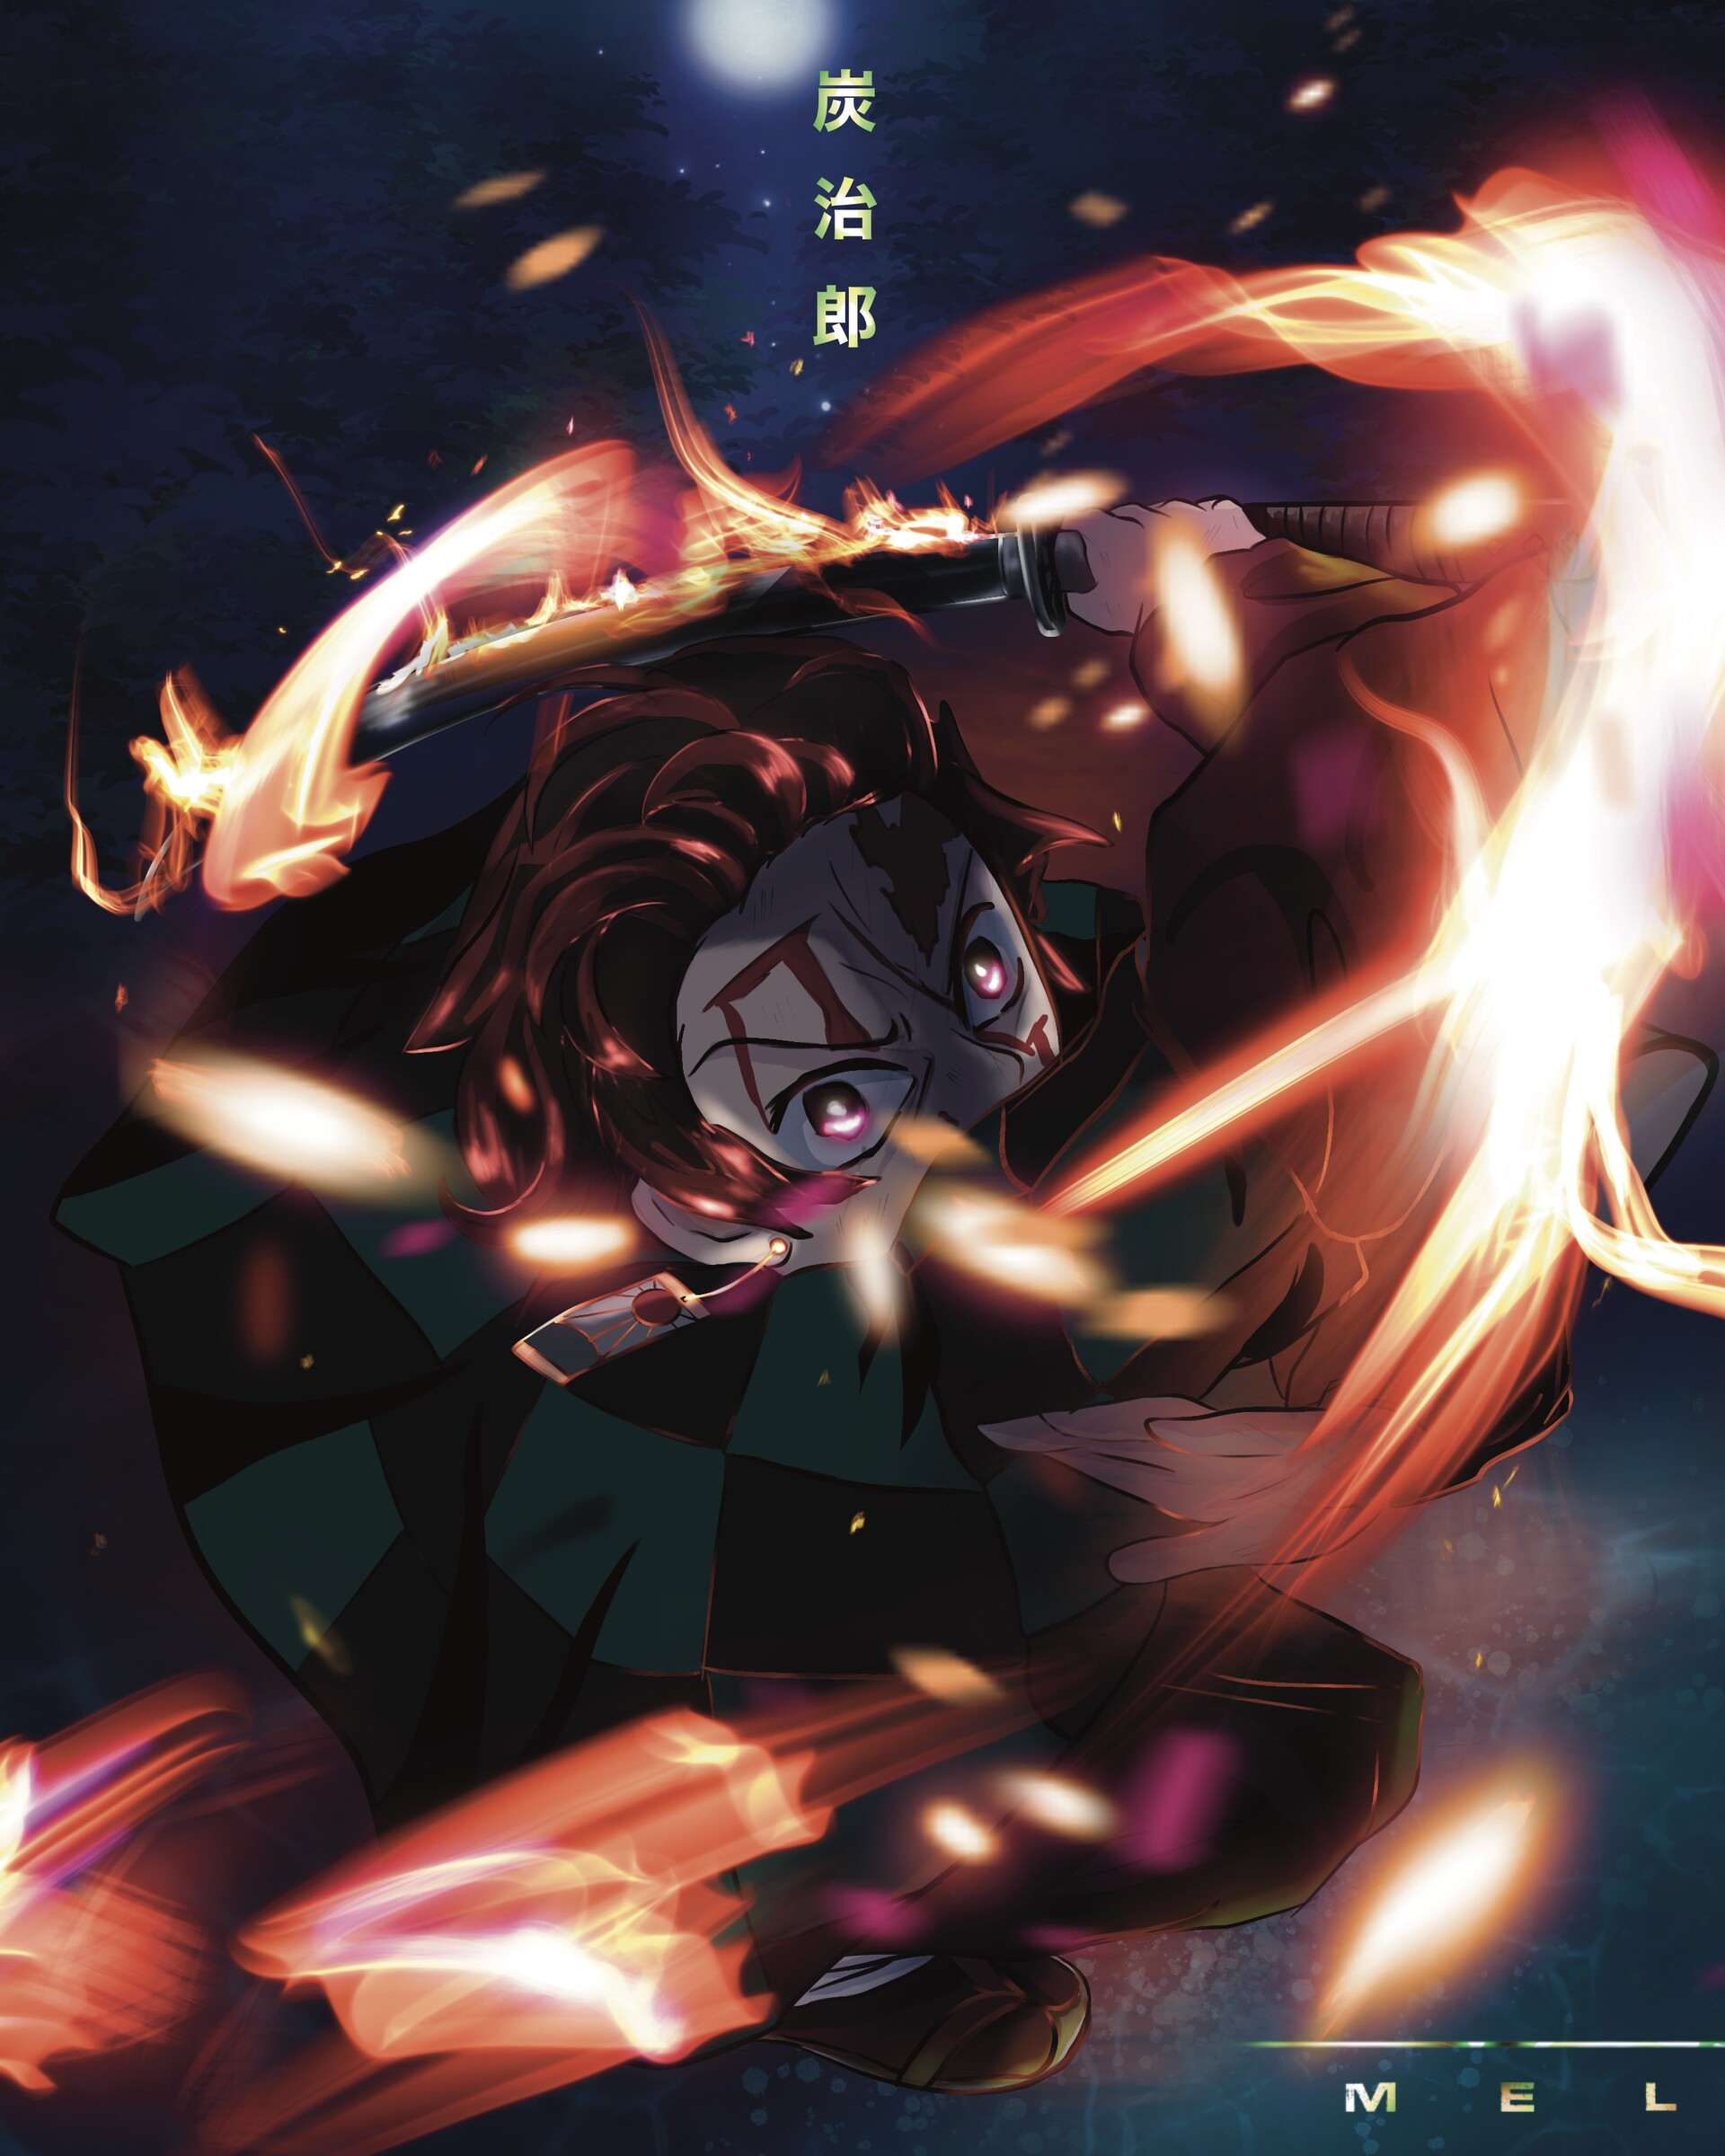 ArtStation - Anime wallpaper/art Demon Slayer